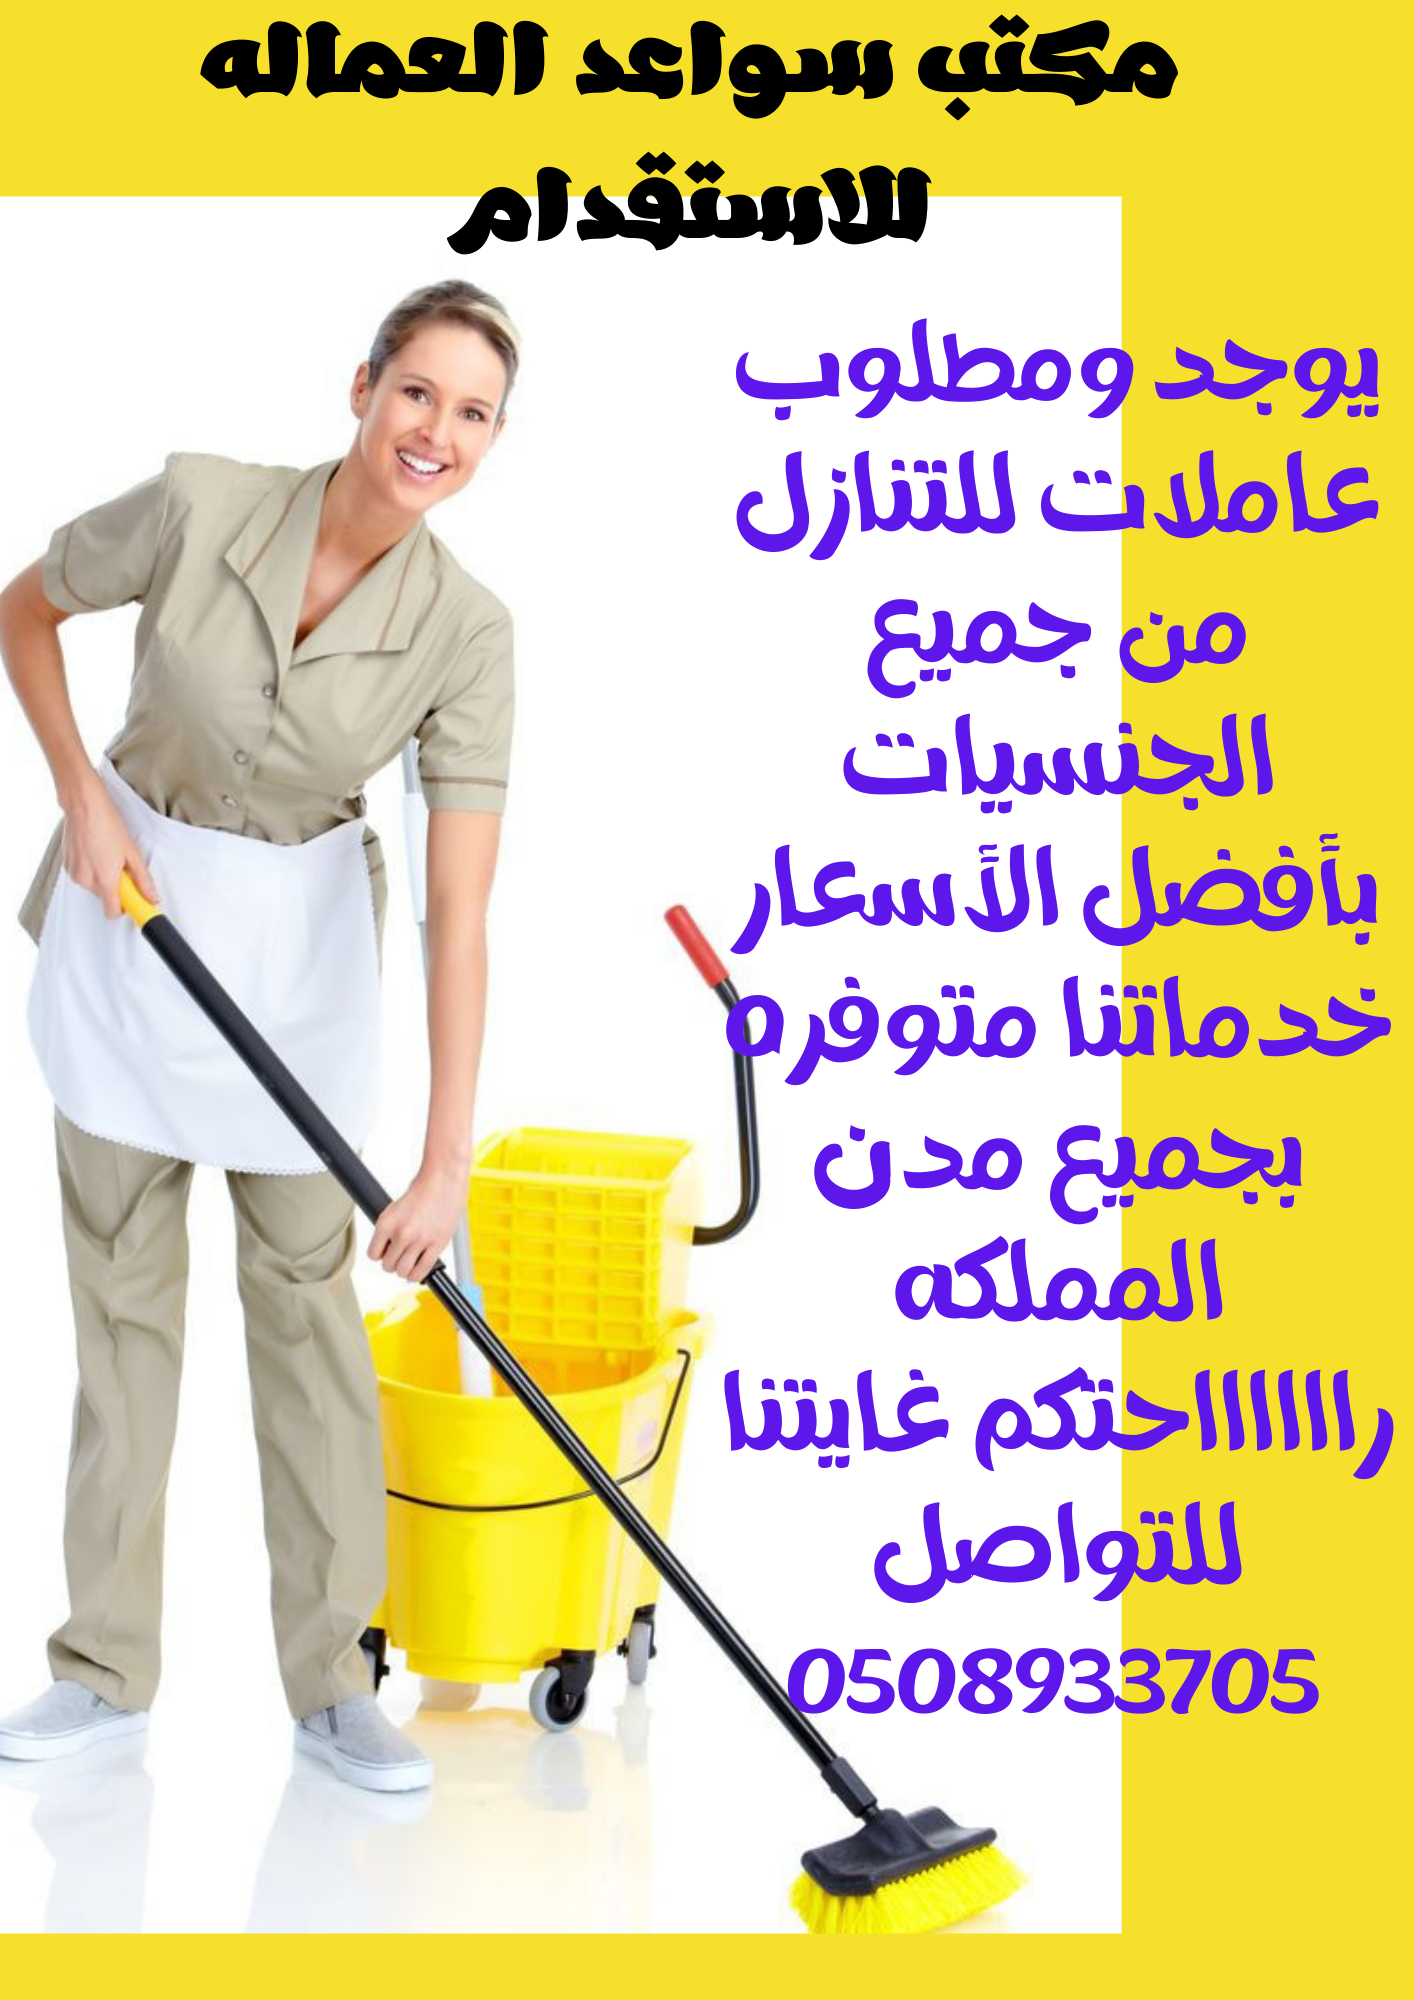 مكتب جوهرة الخليج يوجد ومطلوب عاملات للتنازل من جميع الجنسيات 